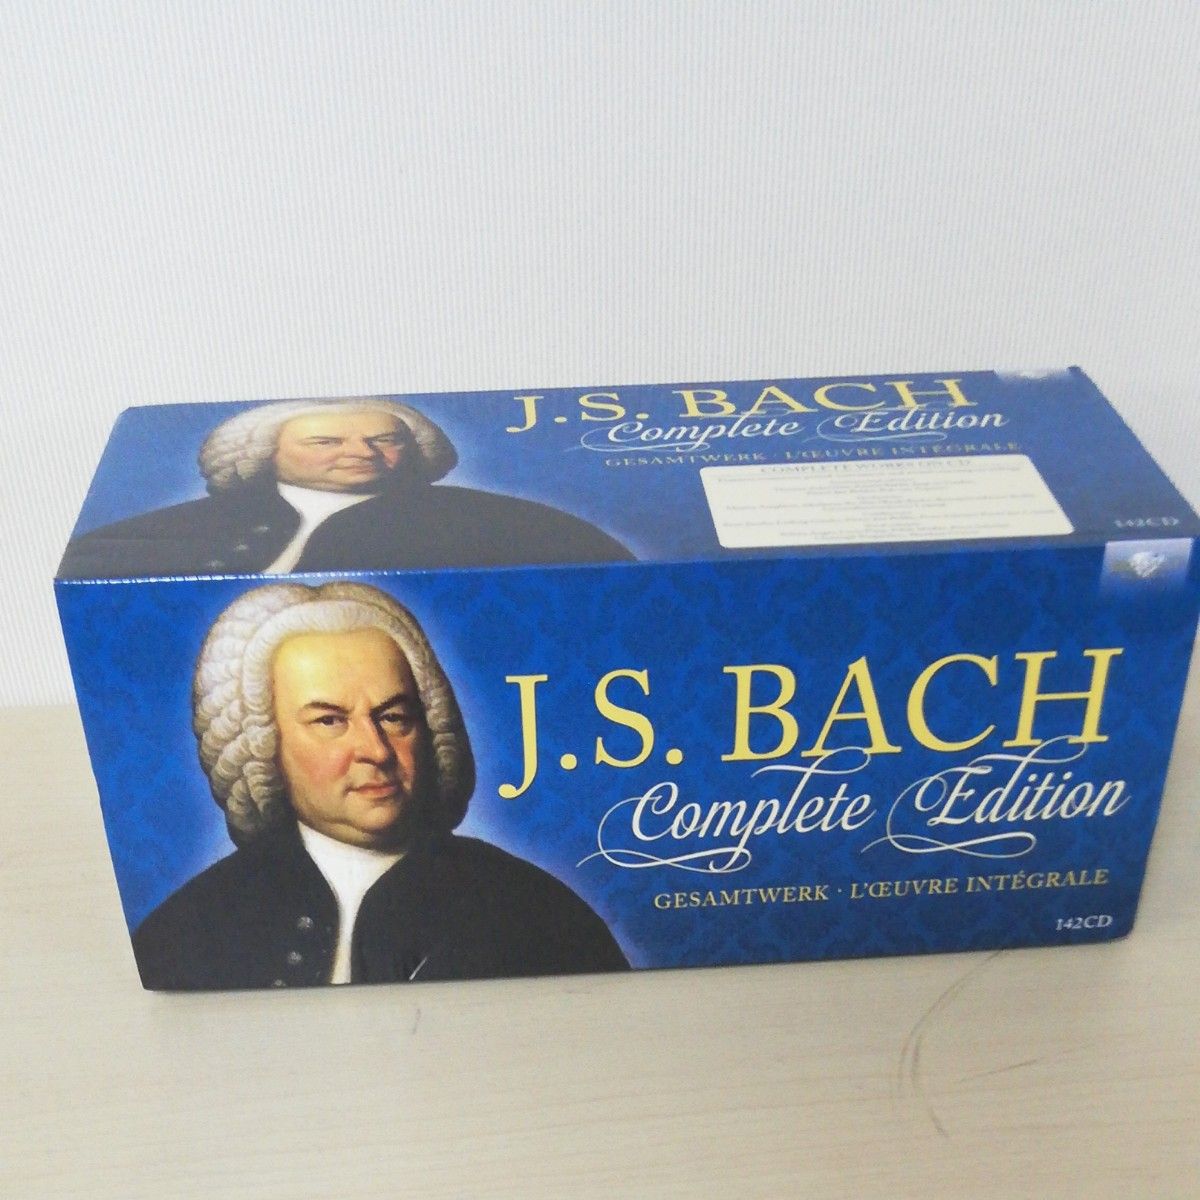 バッハ全集 Bach complete edition 142CD 中古美品 クラシック